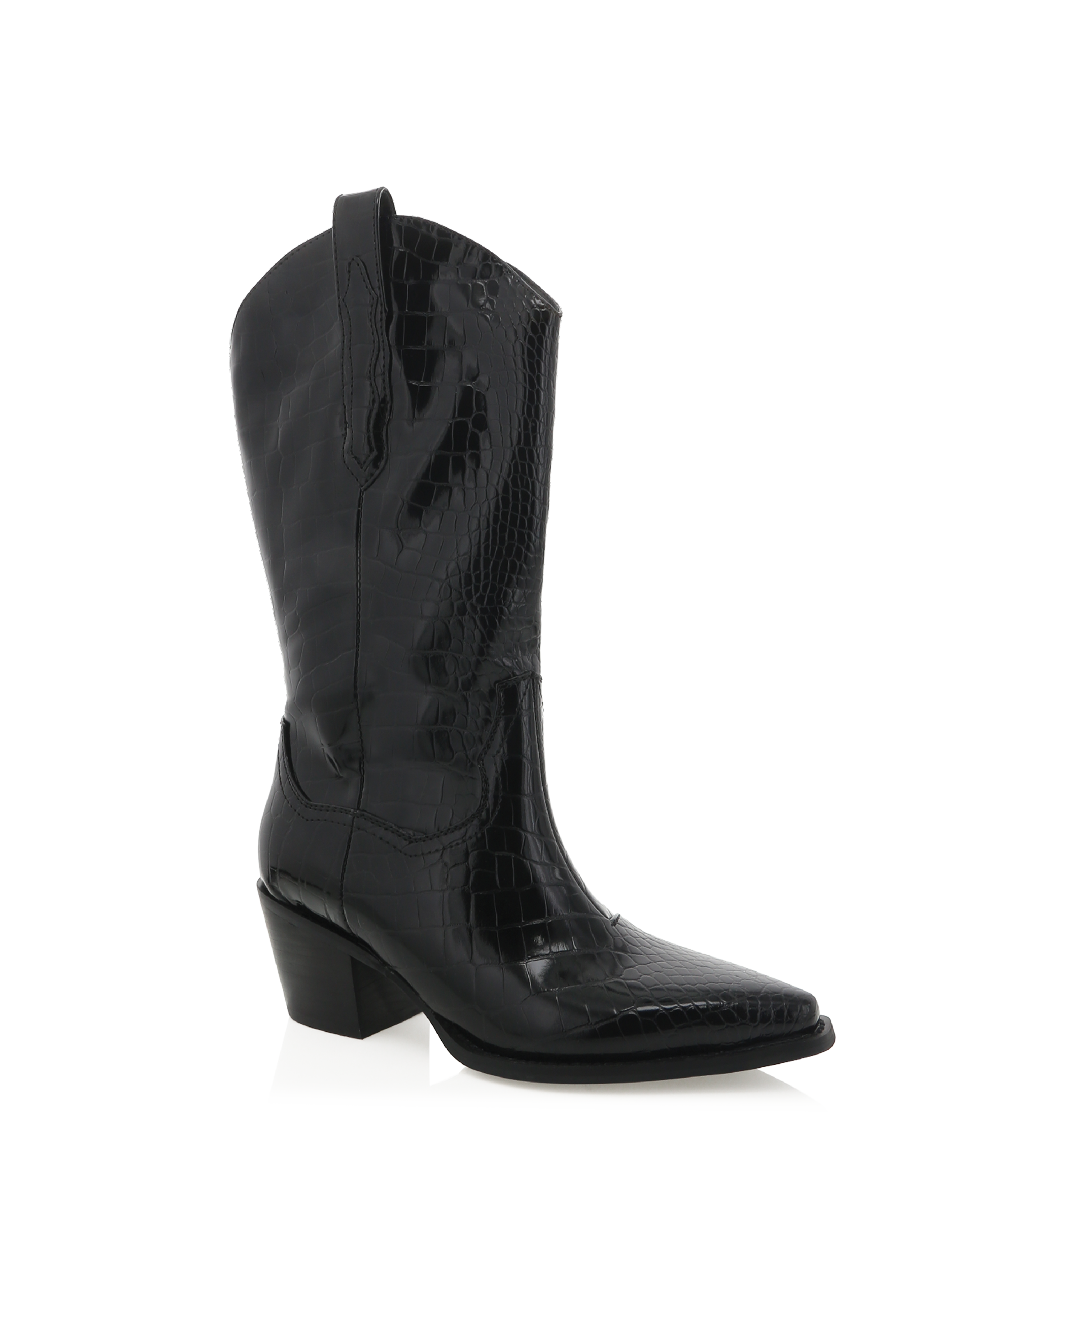 DEACON - SHINY BLACK CROC-Boots-Billini-BILLINI USA